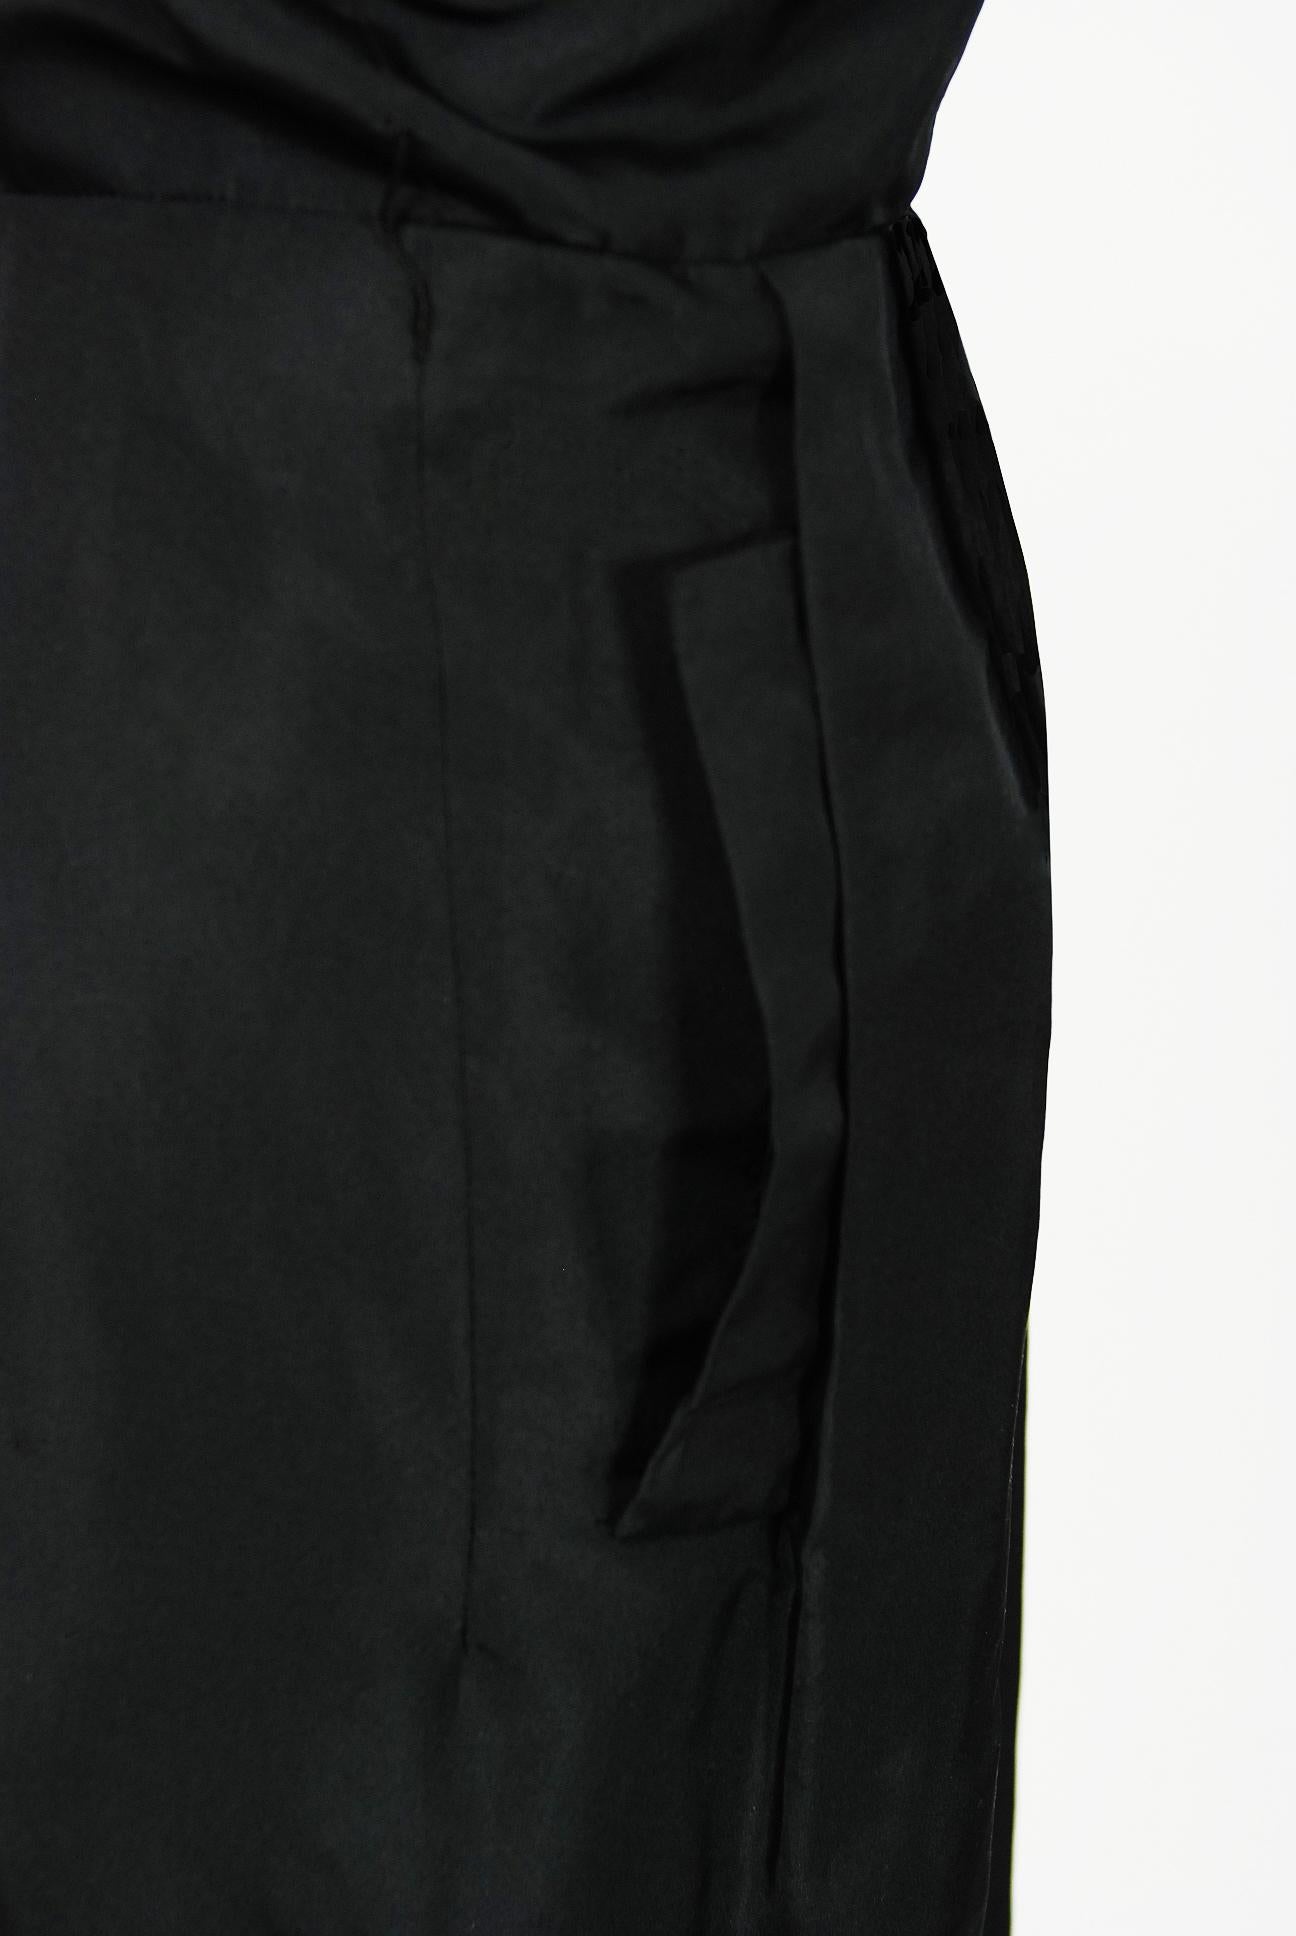 Women's Vintage 1950s Pierre Balmain Black and Nude Silk Dress w/ Billow-Sleeve Jacket 